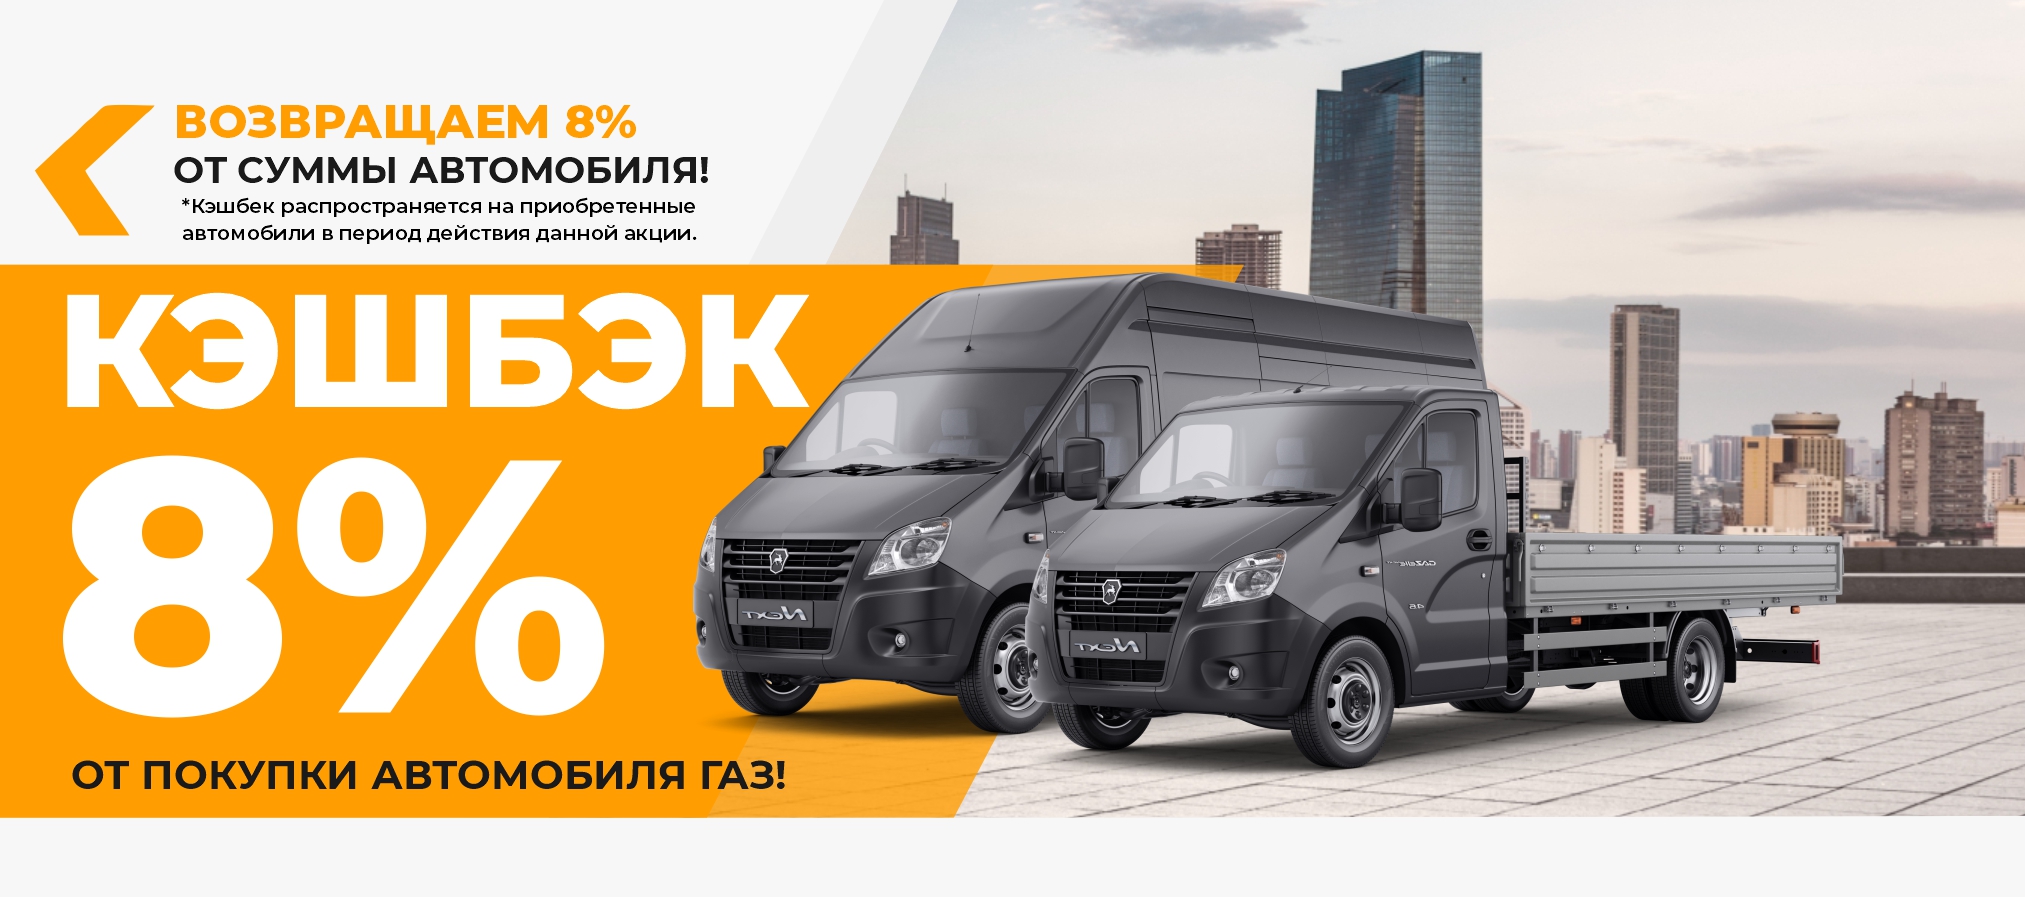 КЭШБЕК 8% от покупки автомобиля ГАЗ!